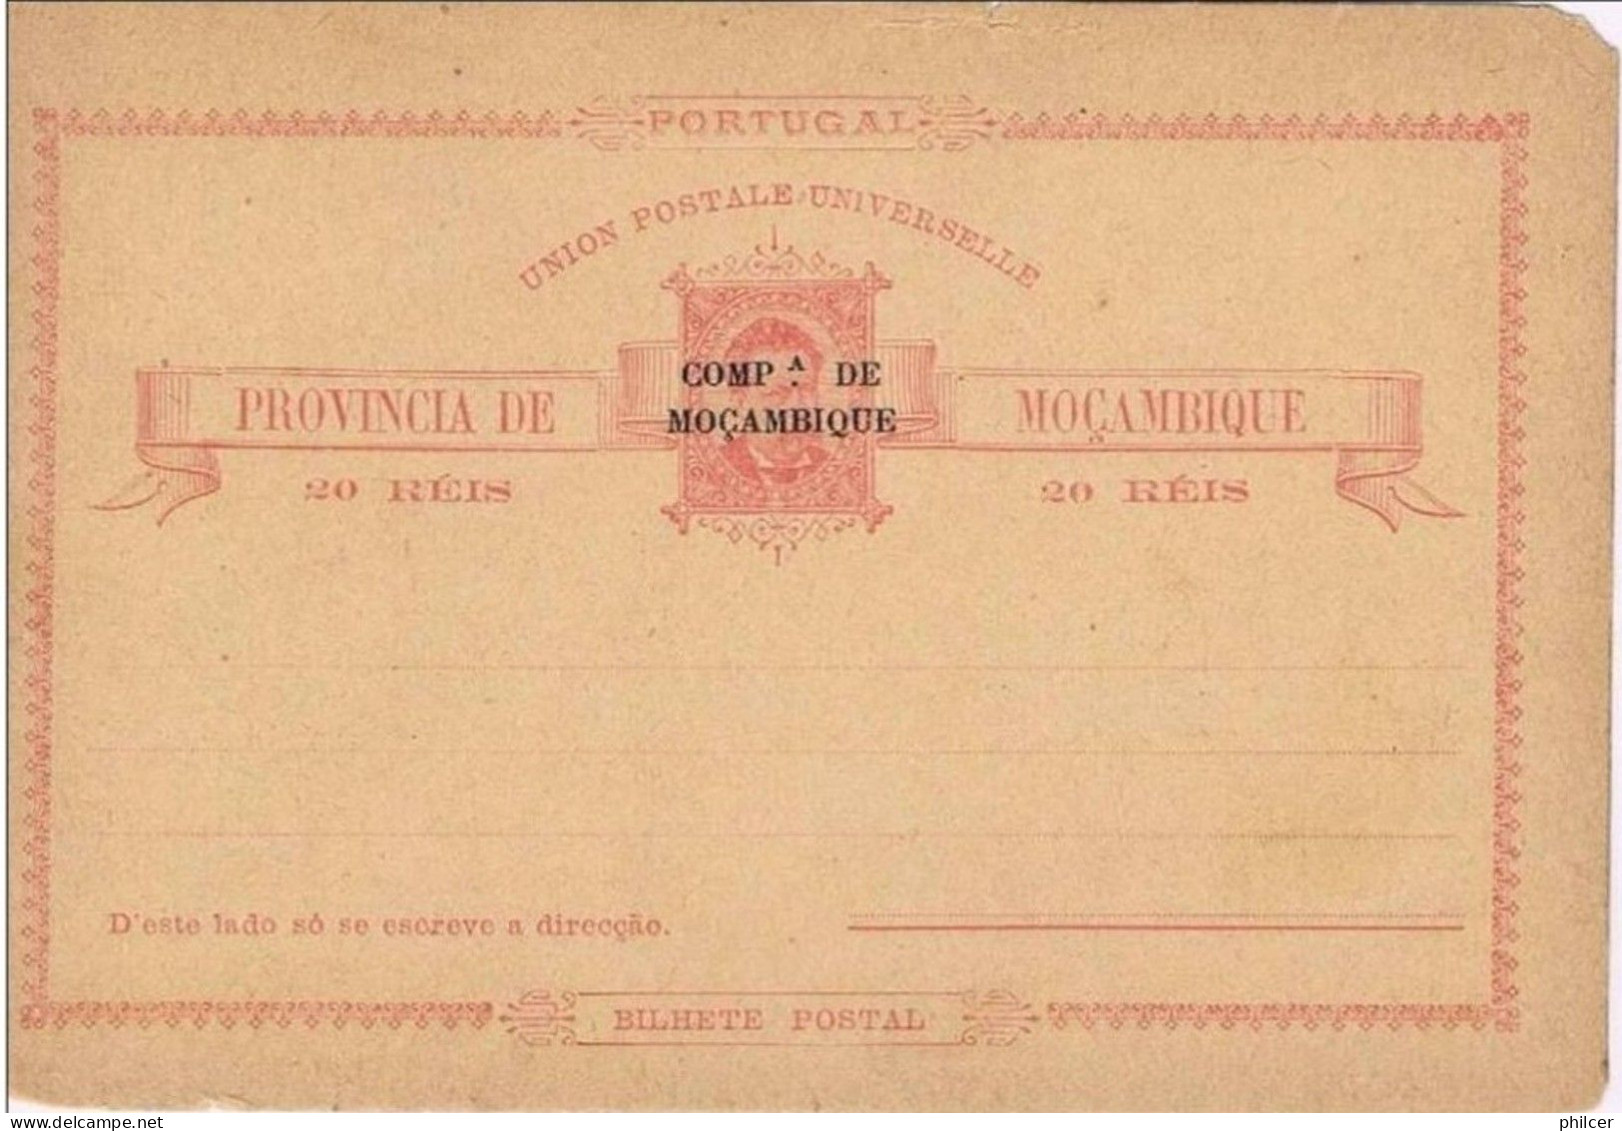 Companhia De Moçambique, Bilhete Postal 20 Reis - Mosambik